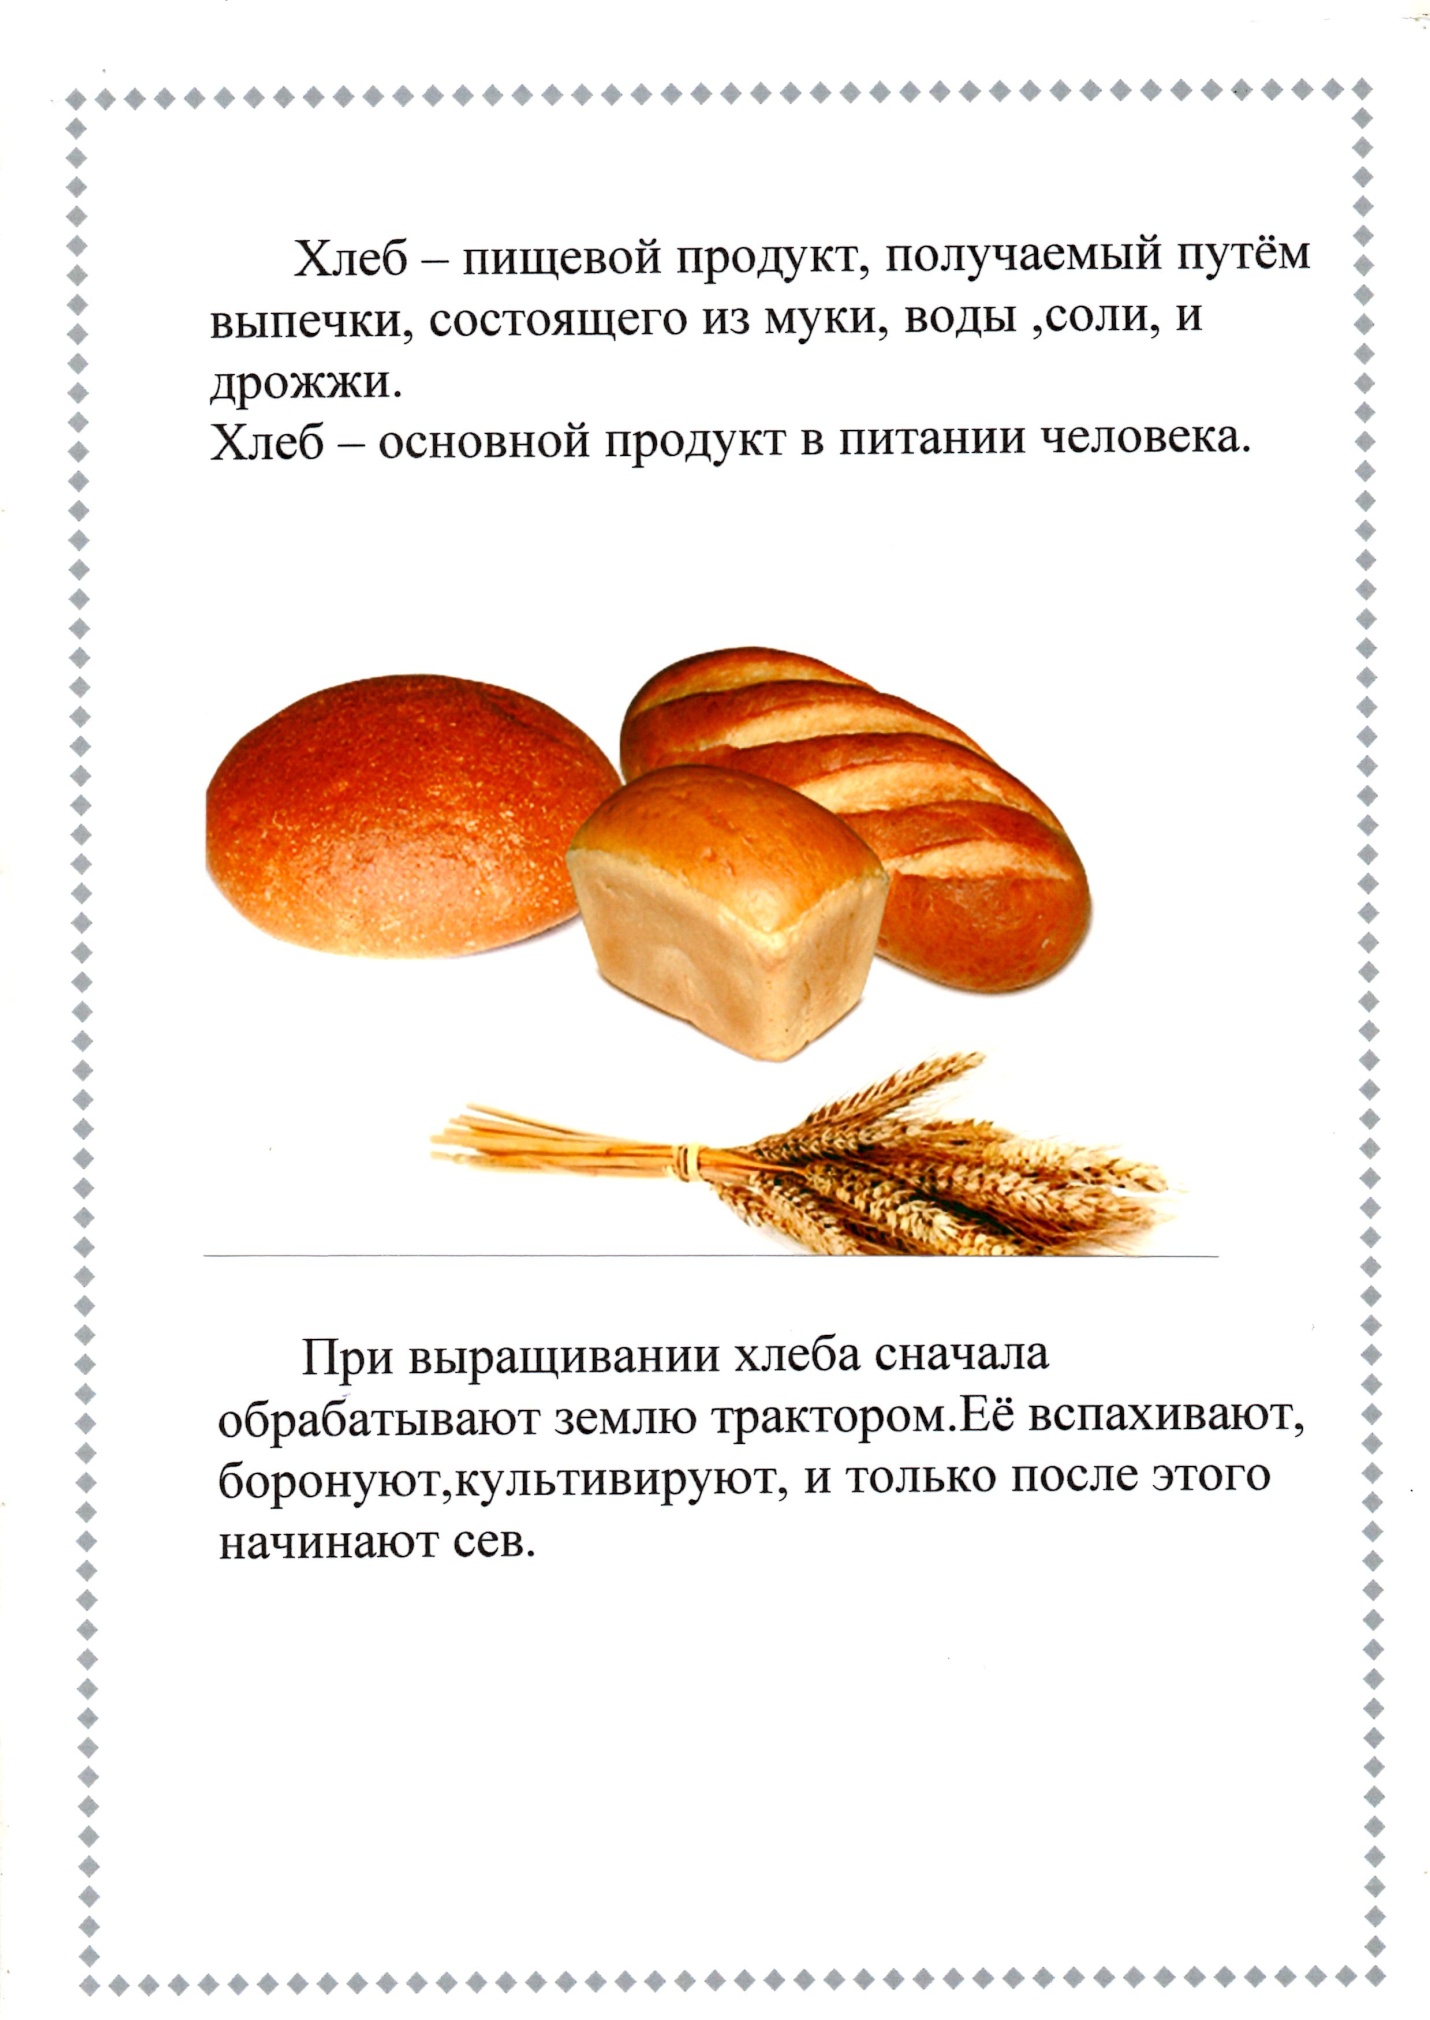 Рисунок на тему откуда хлеб пришел